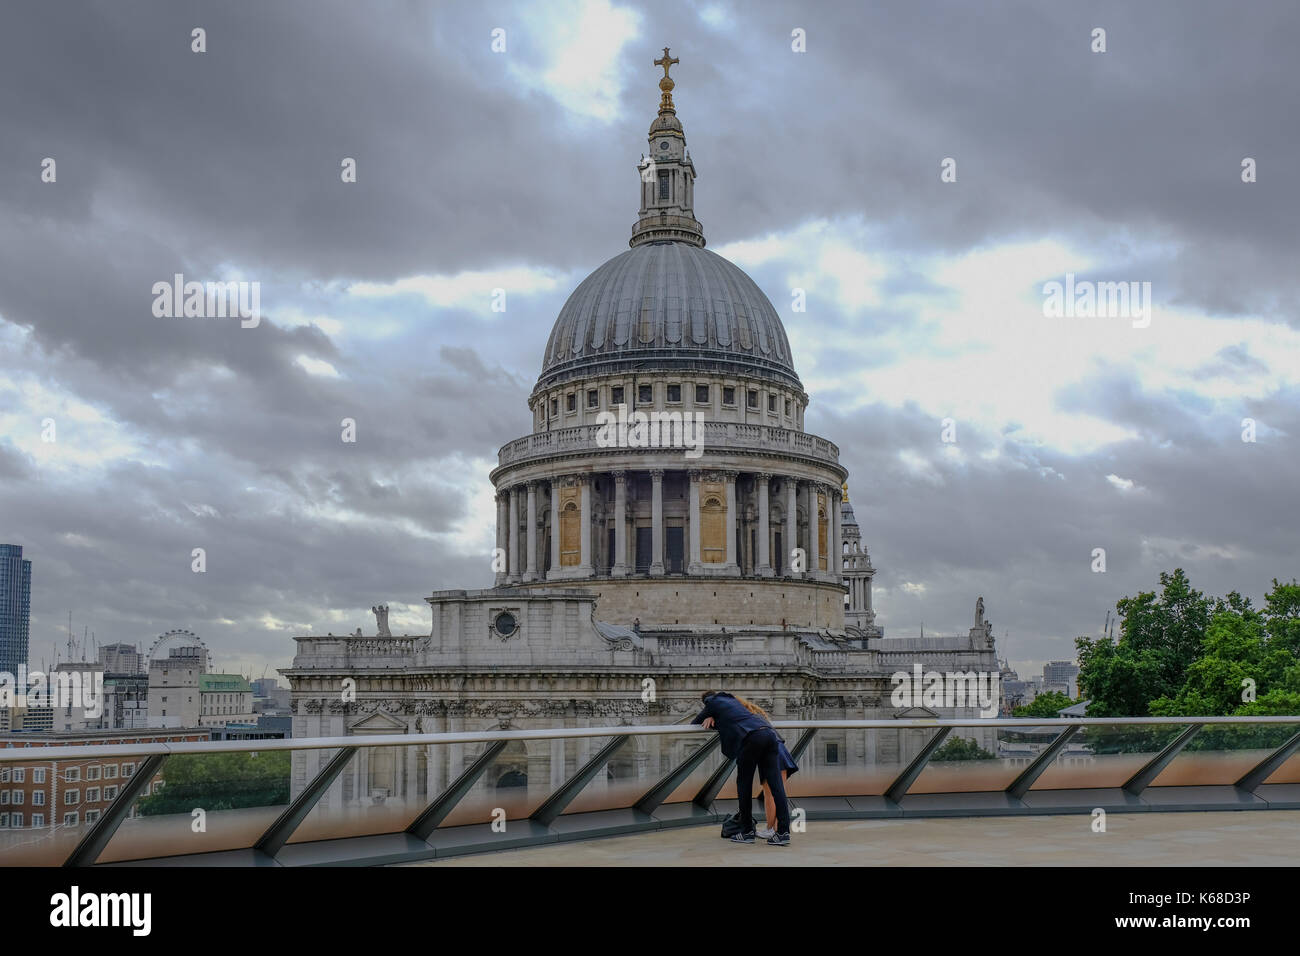 London, Großbritannien - 3. August 2017: die St. Paul's Kathedrale Blick von oben auf 1 Neue ändern. Zeigt ein Paar über das Geländer im Vordergrund. Stockfoto